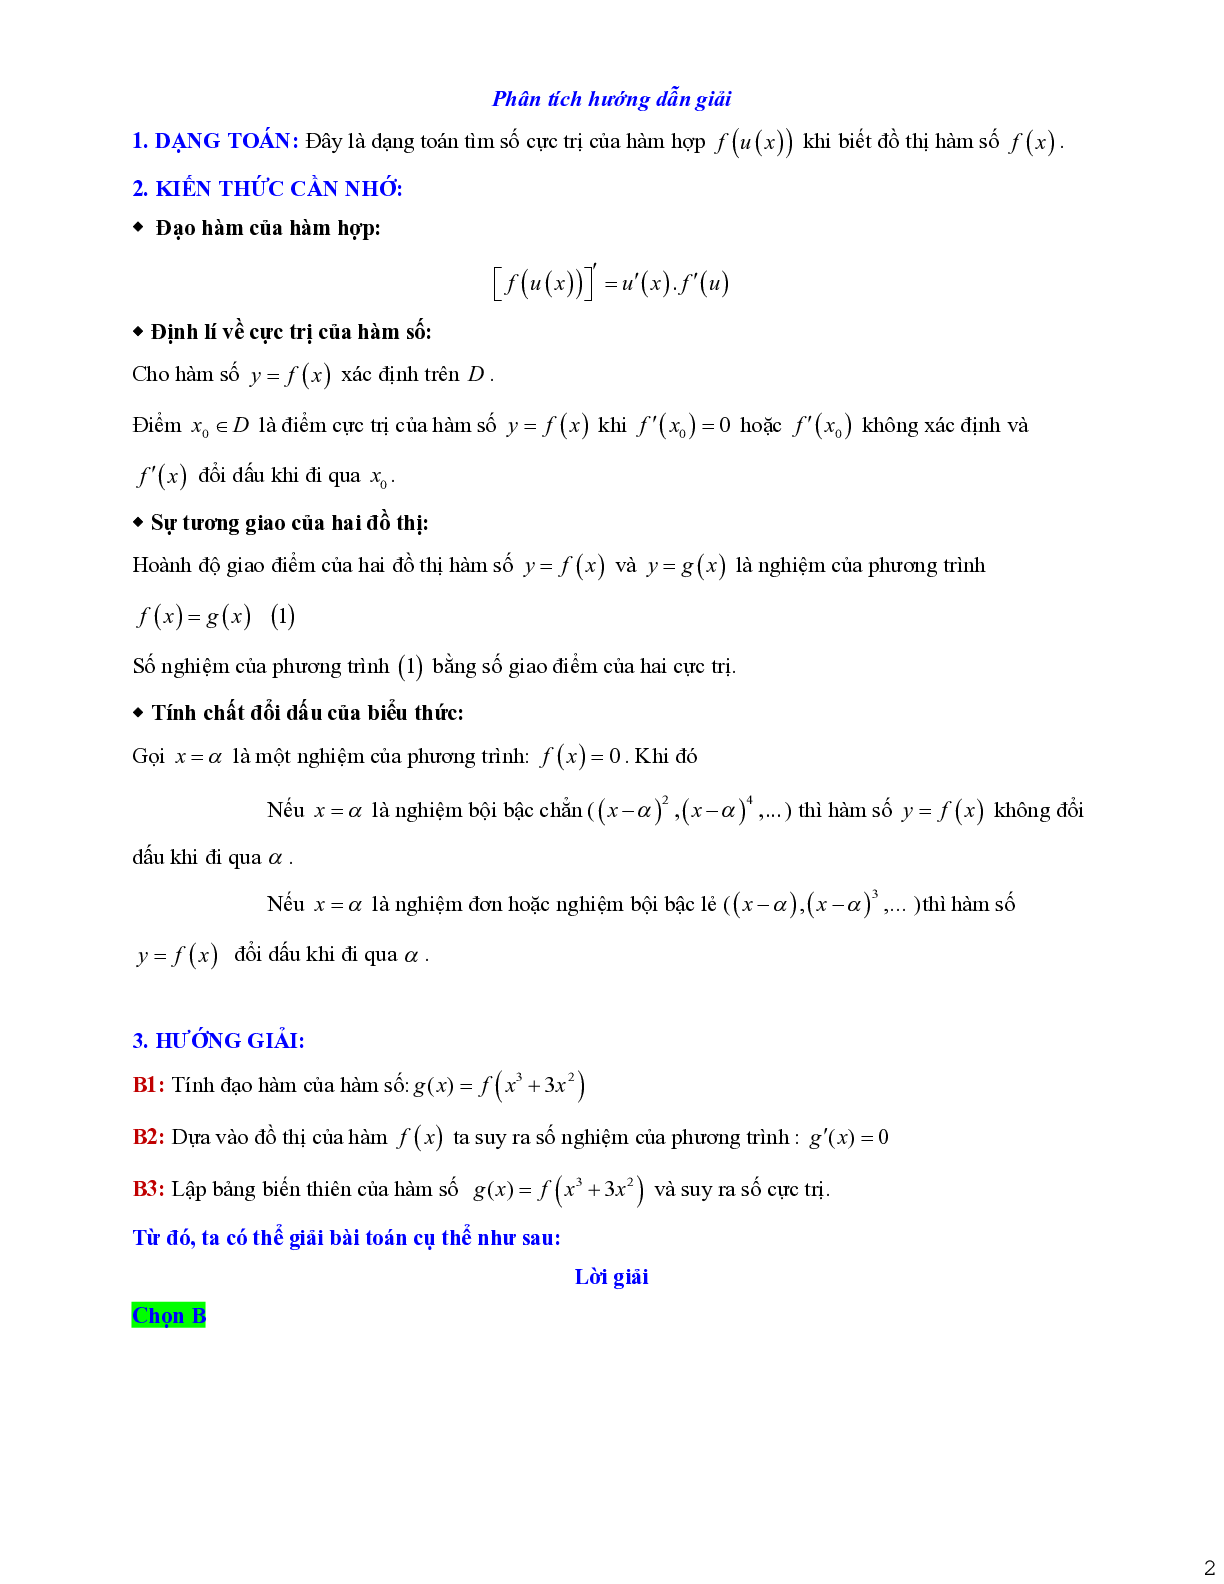 Tìm cực trị của hàm số hợp khi biết đồ thị hàm số (trang 2)